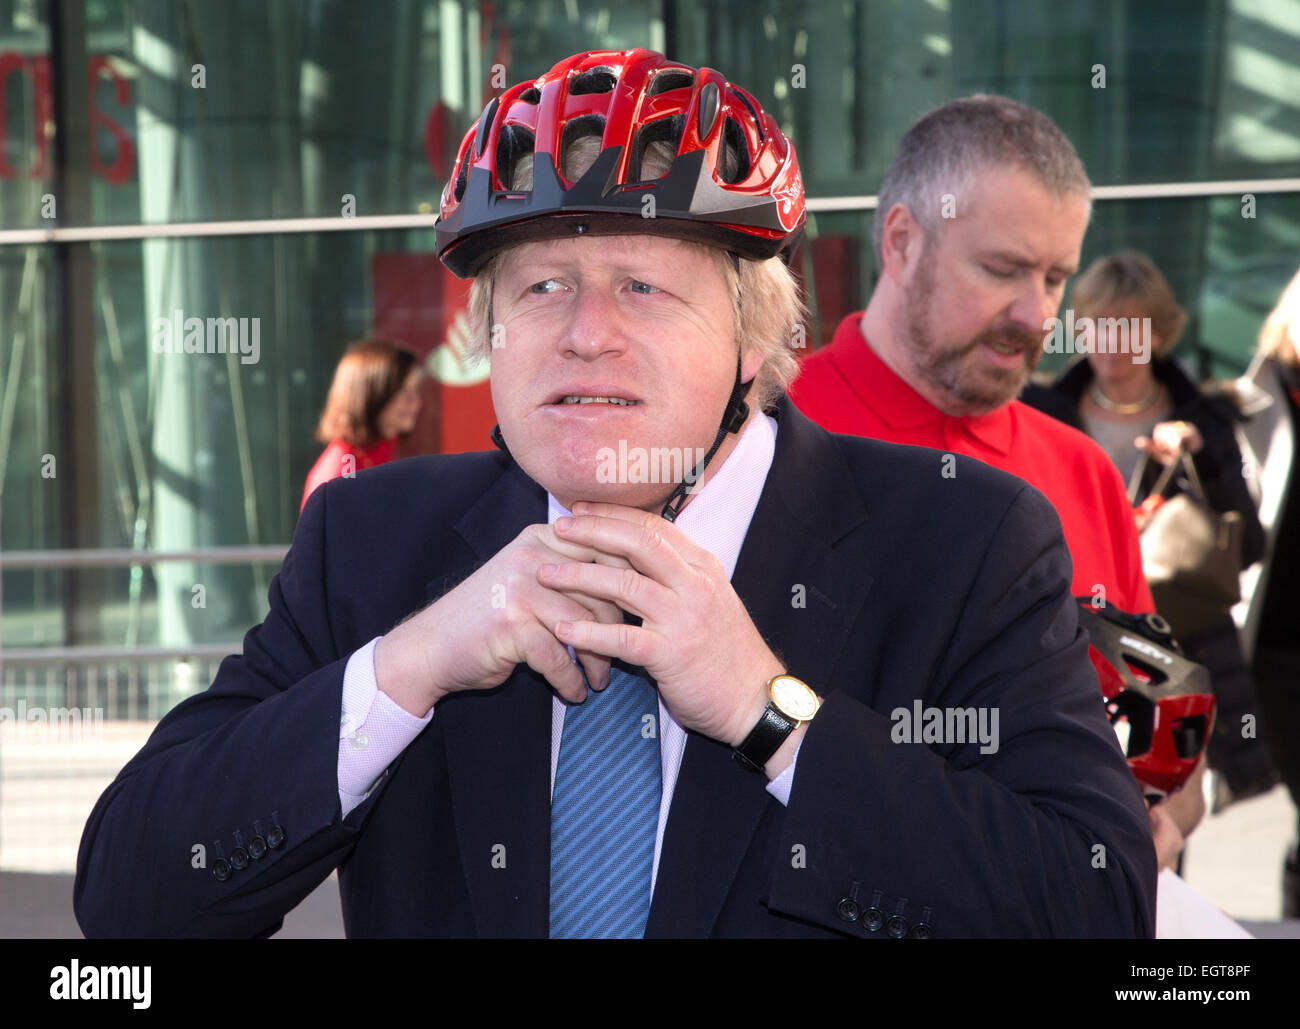 El Alcalde de Londres, Boris Johnson, habla en un evento promoción alquiler de bicicletas en Londres Foto de stock